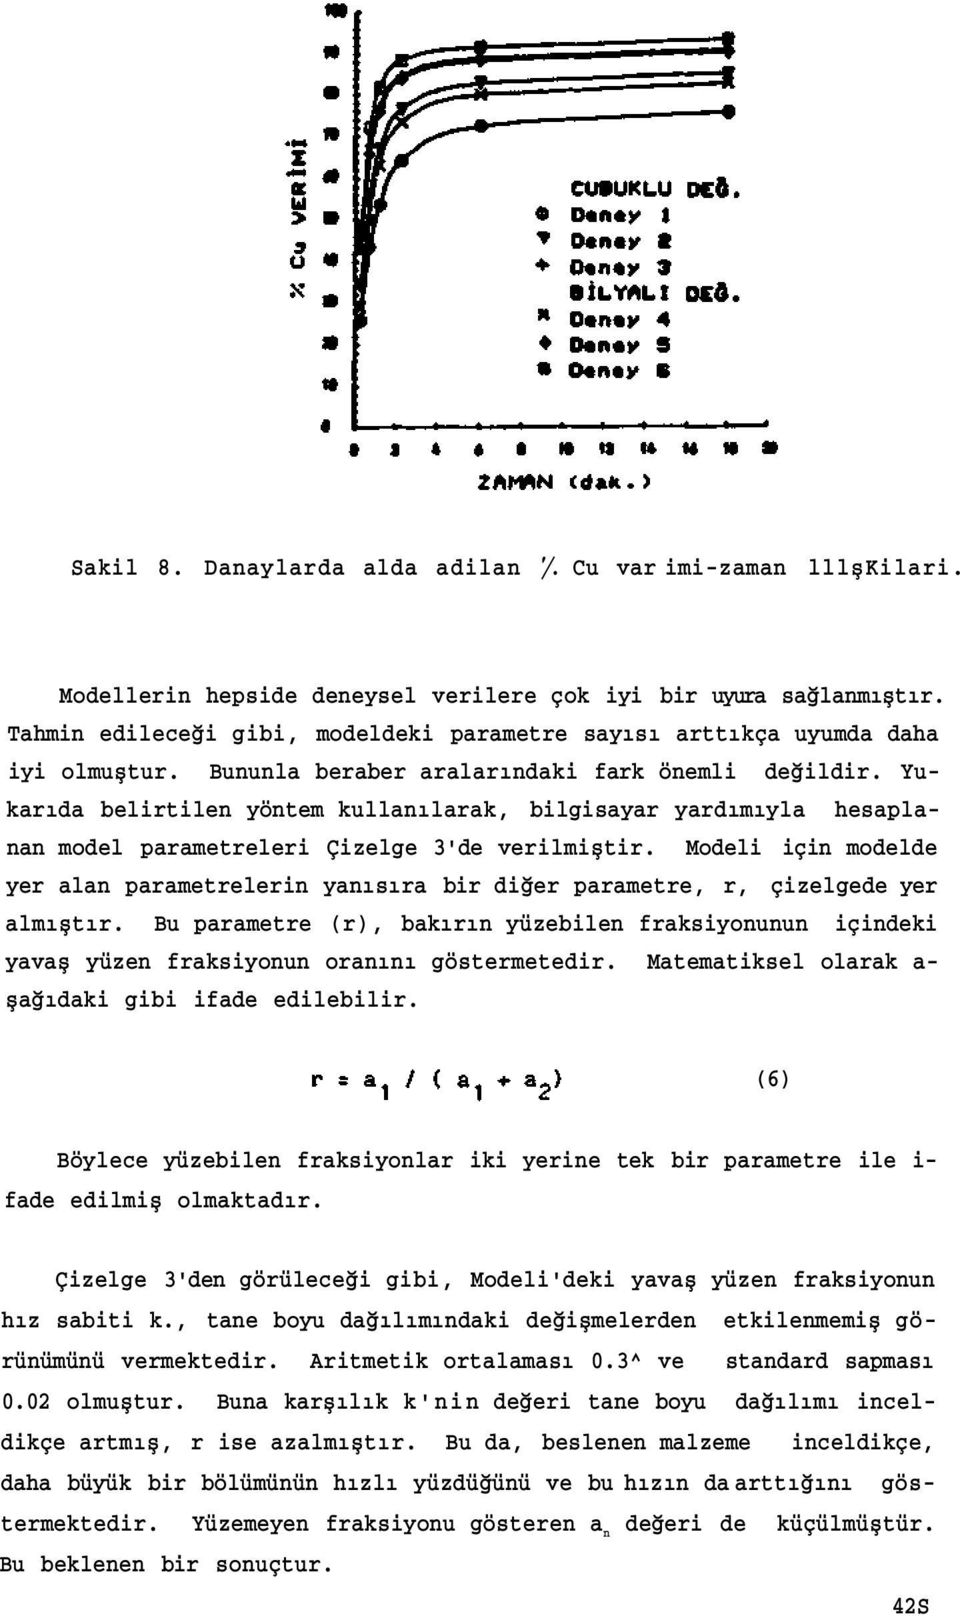 Yukarıda belirtilen yöntem kullanılarak, bilgisayar yardımıyla hesaplanan model parametreleri Çizelge 3'de verilmiştir.